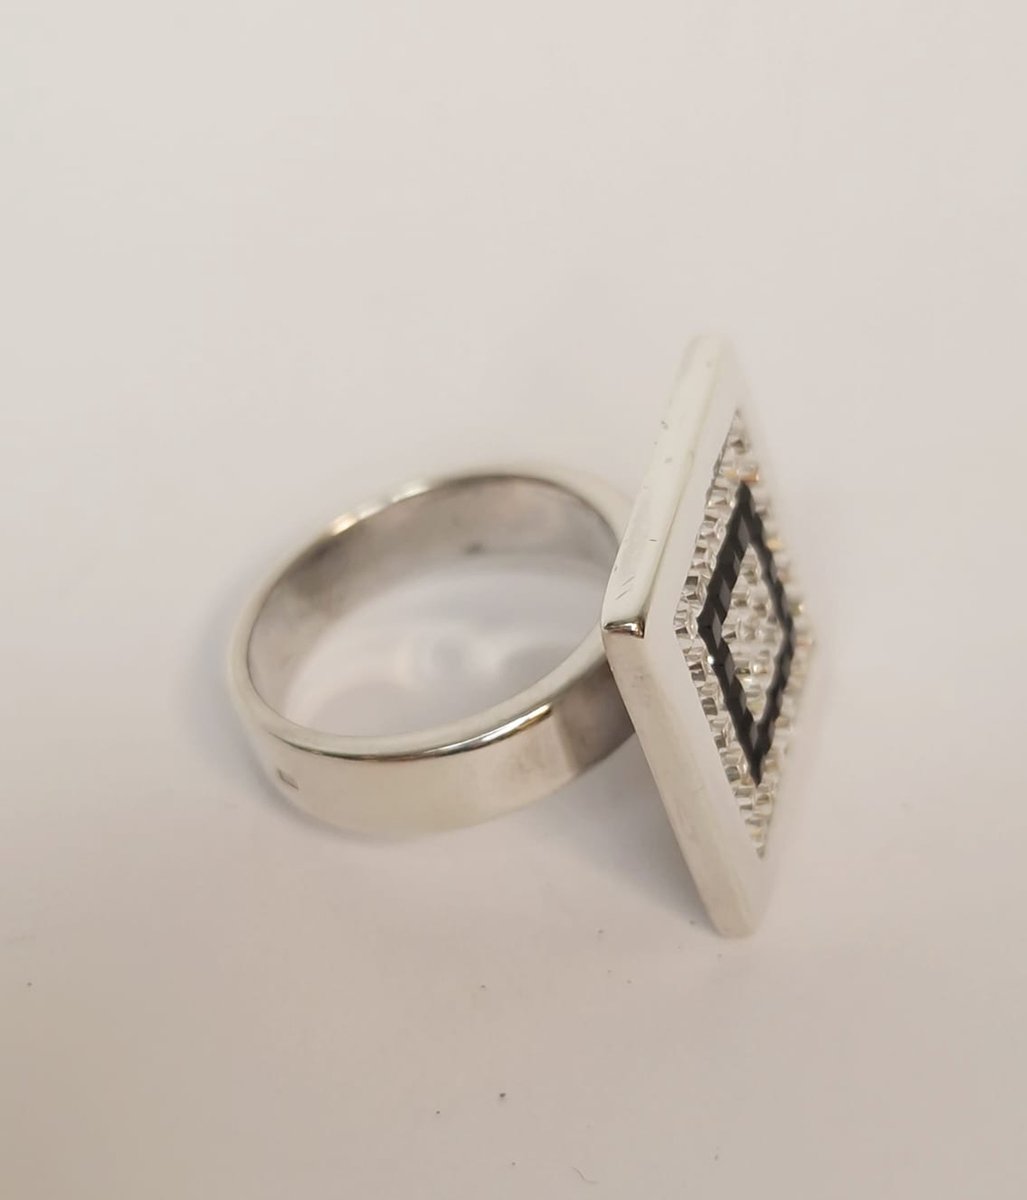 Zilveren ring - Jan des Bouvrie - 925dz - zirkonia - sale Juwelier Verlinden St. Hubert - van €85,= voor €60,=